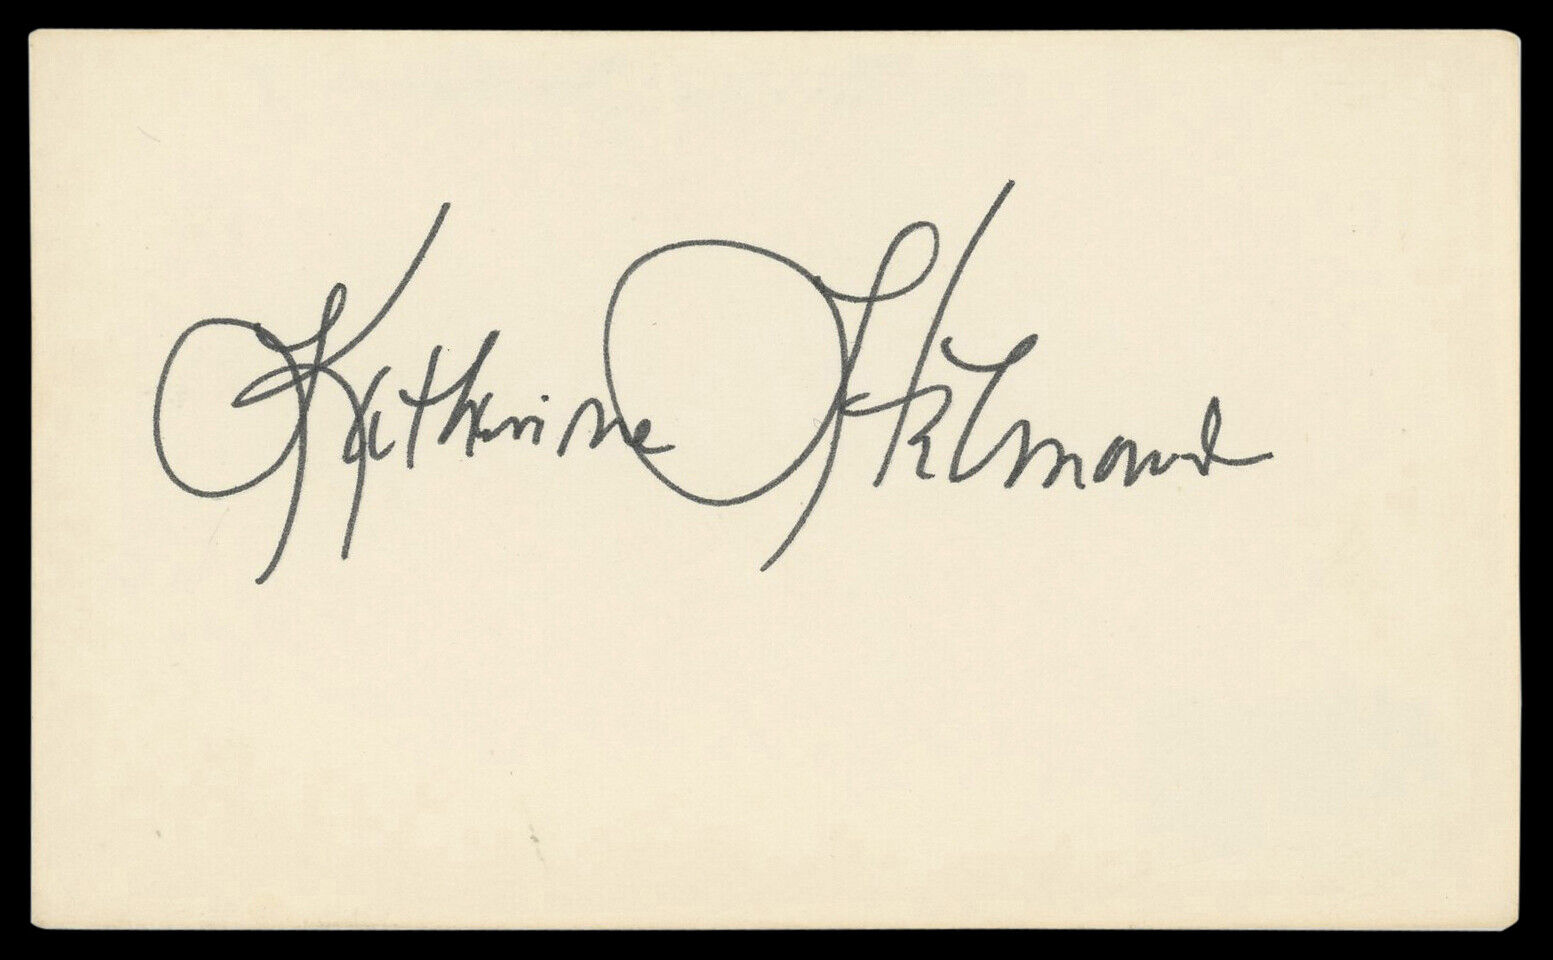 Katherine Helmond Soap Authentic Signed 3x5 Index Card Autographed BAS #BM57056